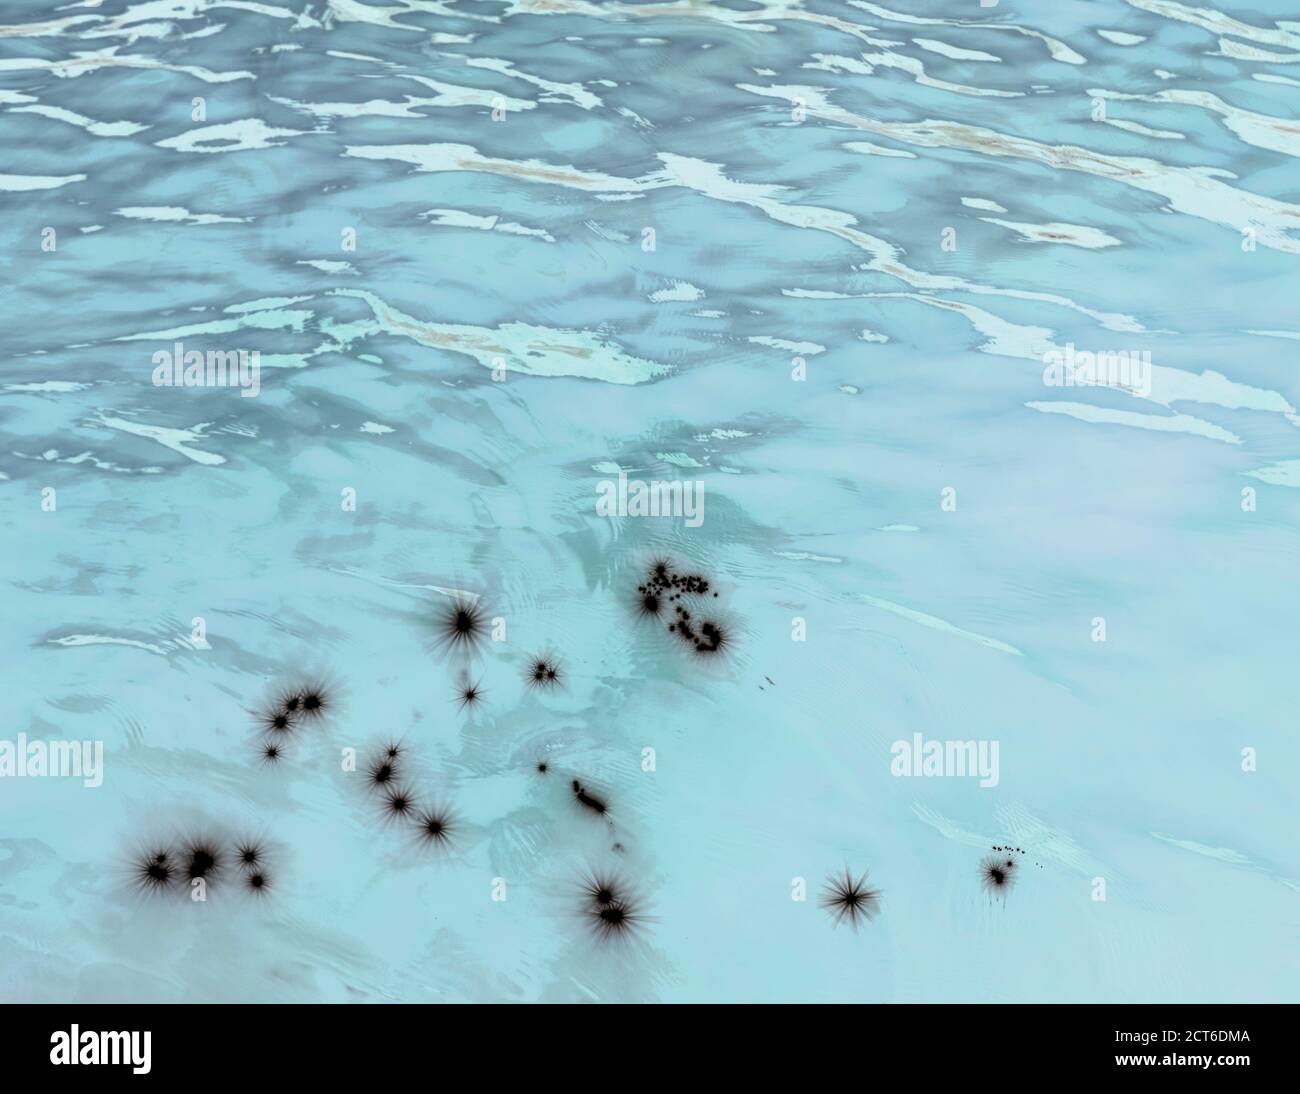 Invertiertes Bild des ruhigen Wassers eines Sees, Wellenmuster und Reflexionen Stockfoto